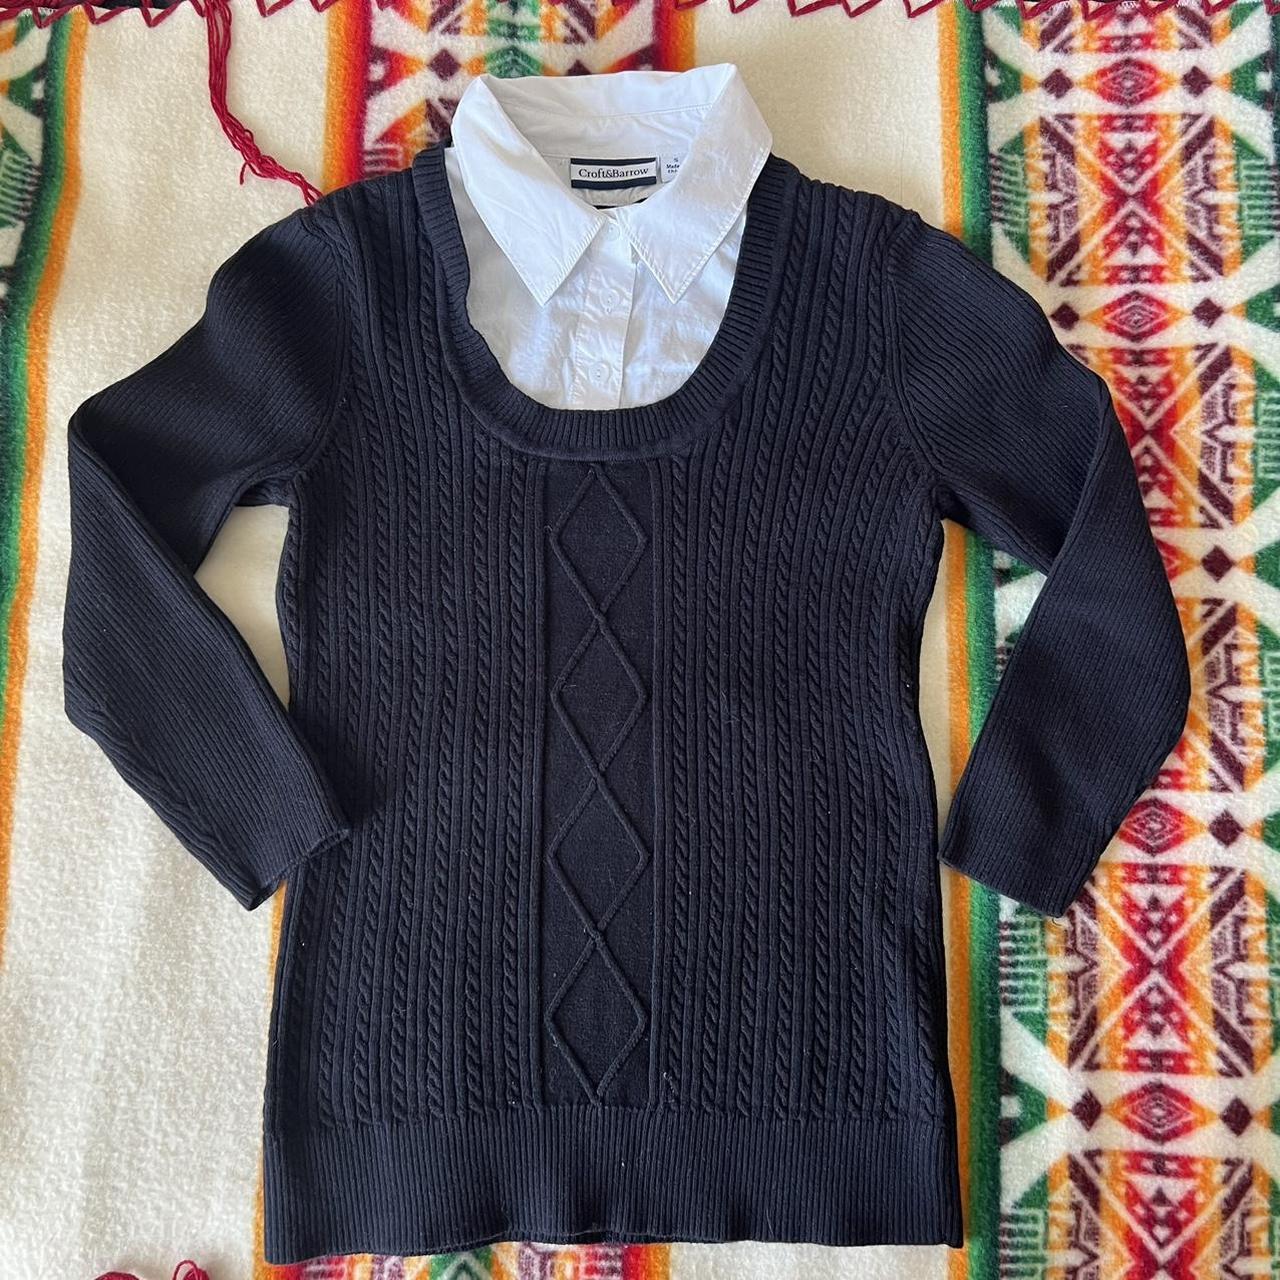 💫 b&w sweater w/button up collar💫 a cute rib knit... - Depop